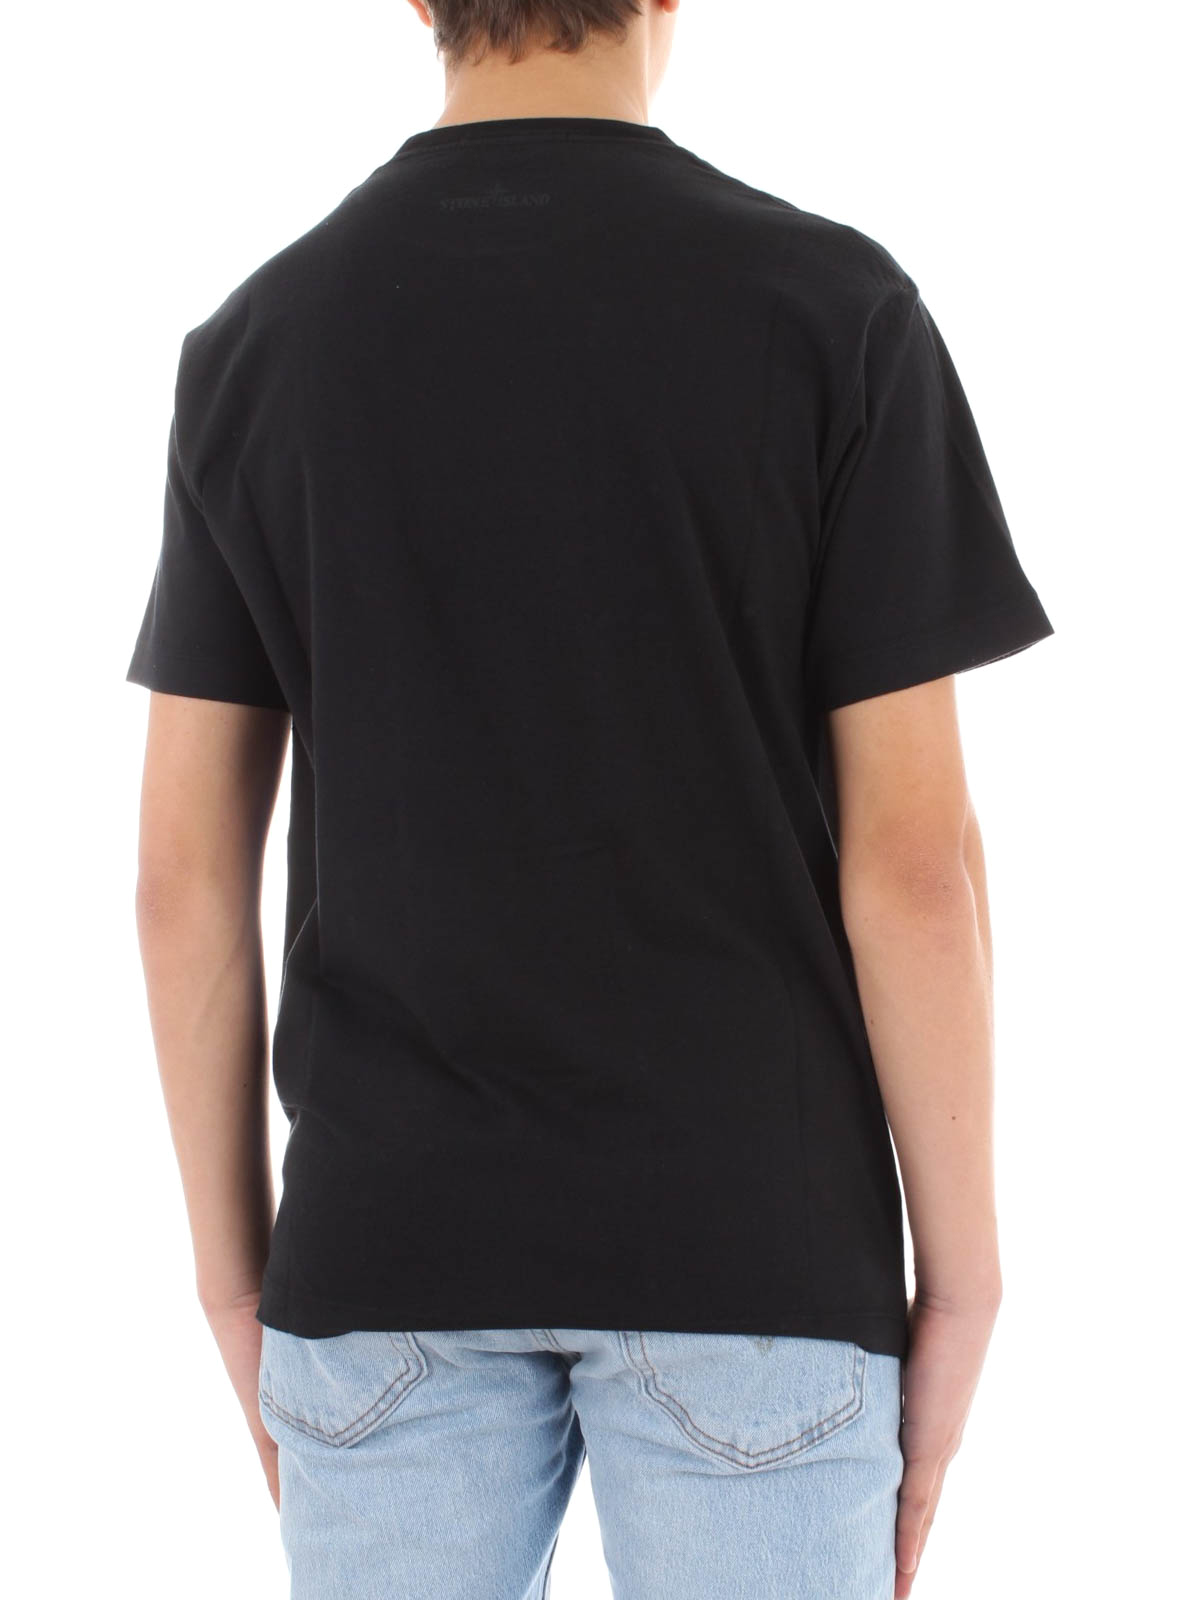 Camisetas Stone Island - Camiseta Negra Para Hombre - 651520187V0029